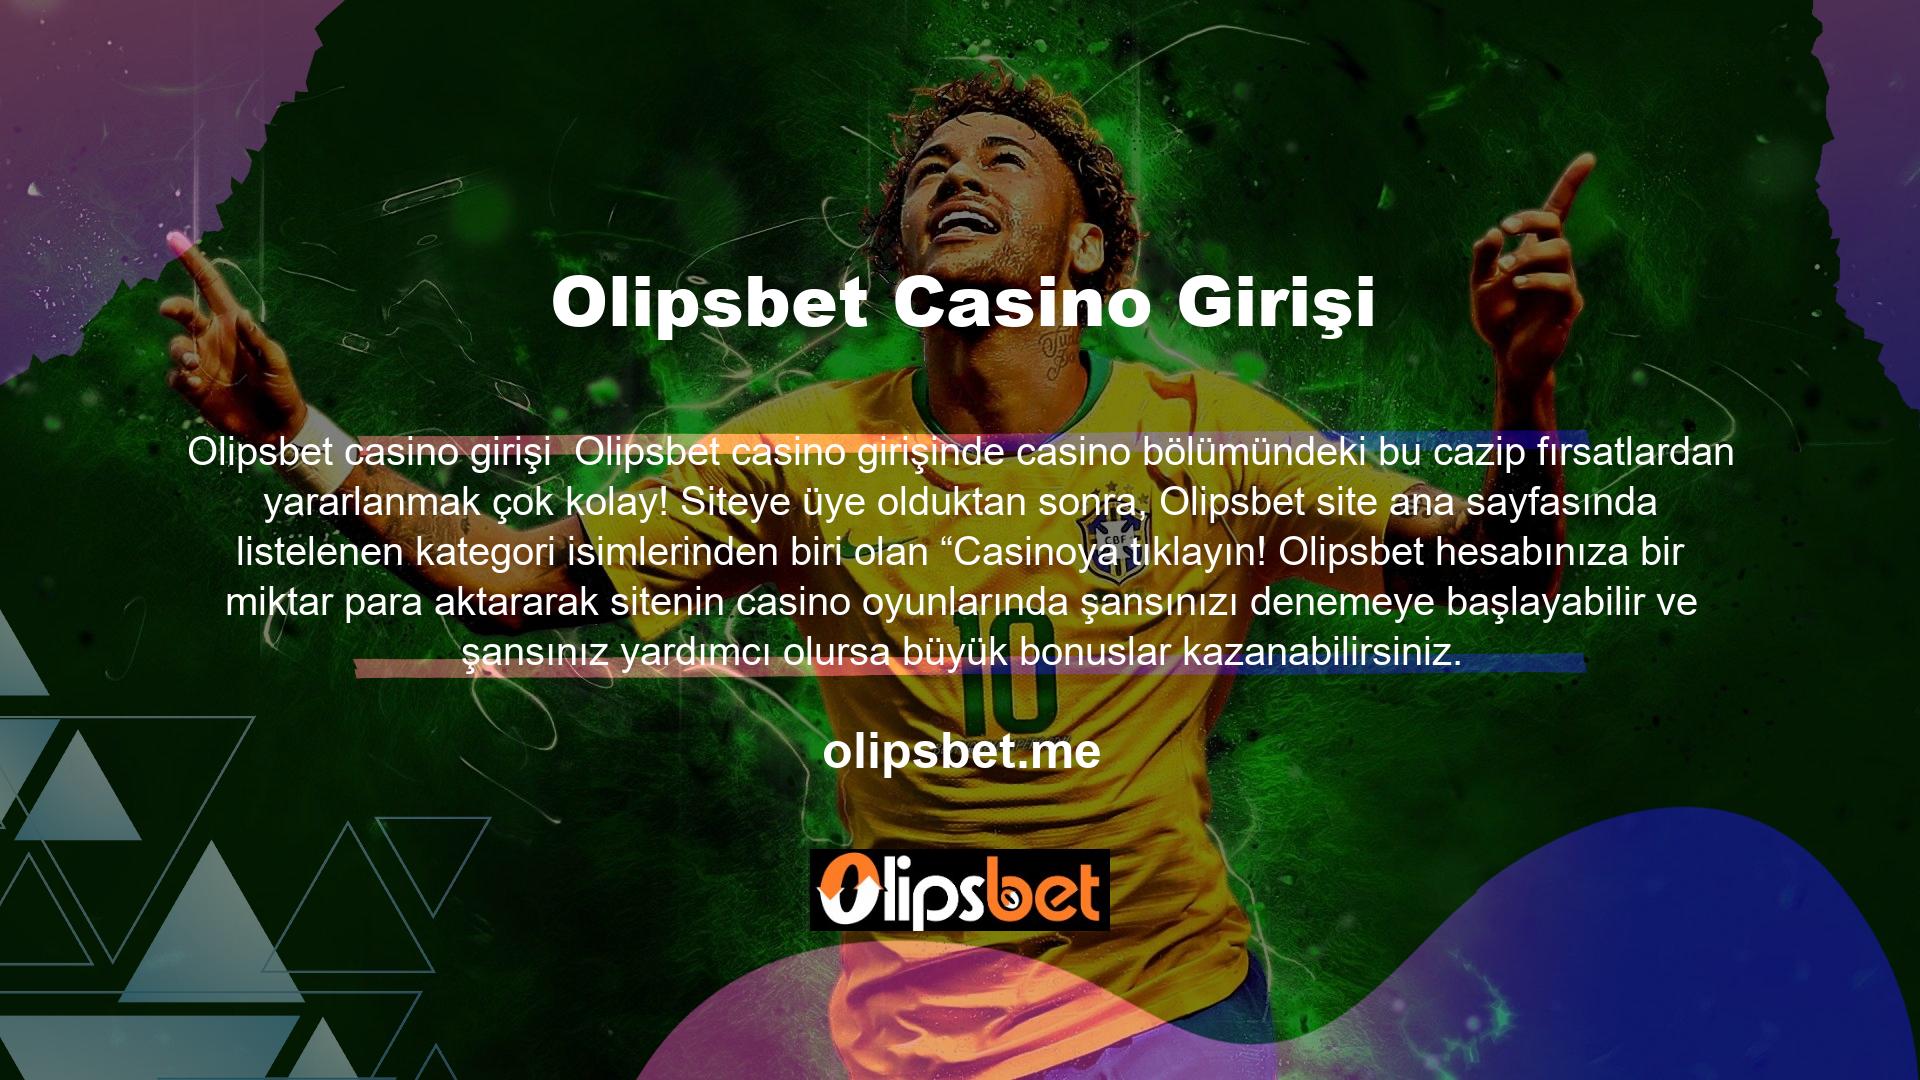 Olipsbet Casino SayfasıOlipsbet bahis sitesinin casino bölümünün belirli sayfaları çok renkli bir tasarıma sahiptir ve kullanımı çok kolaydır